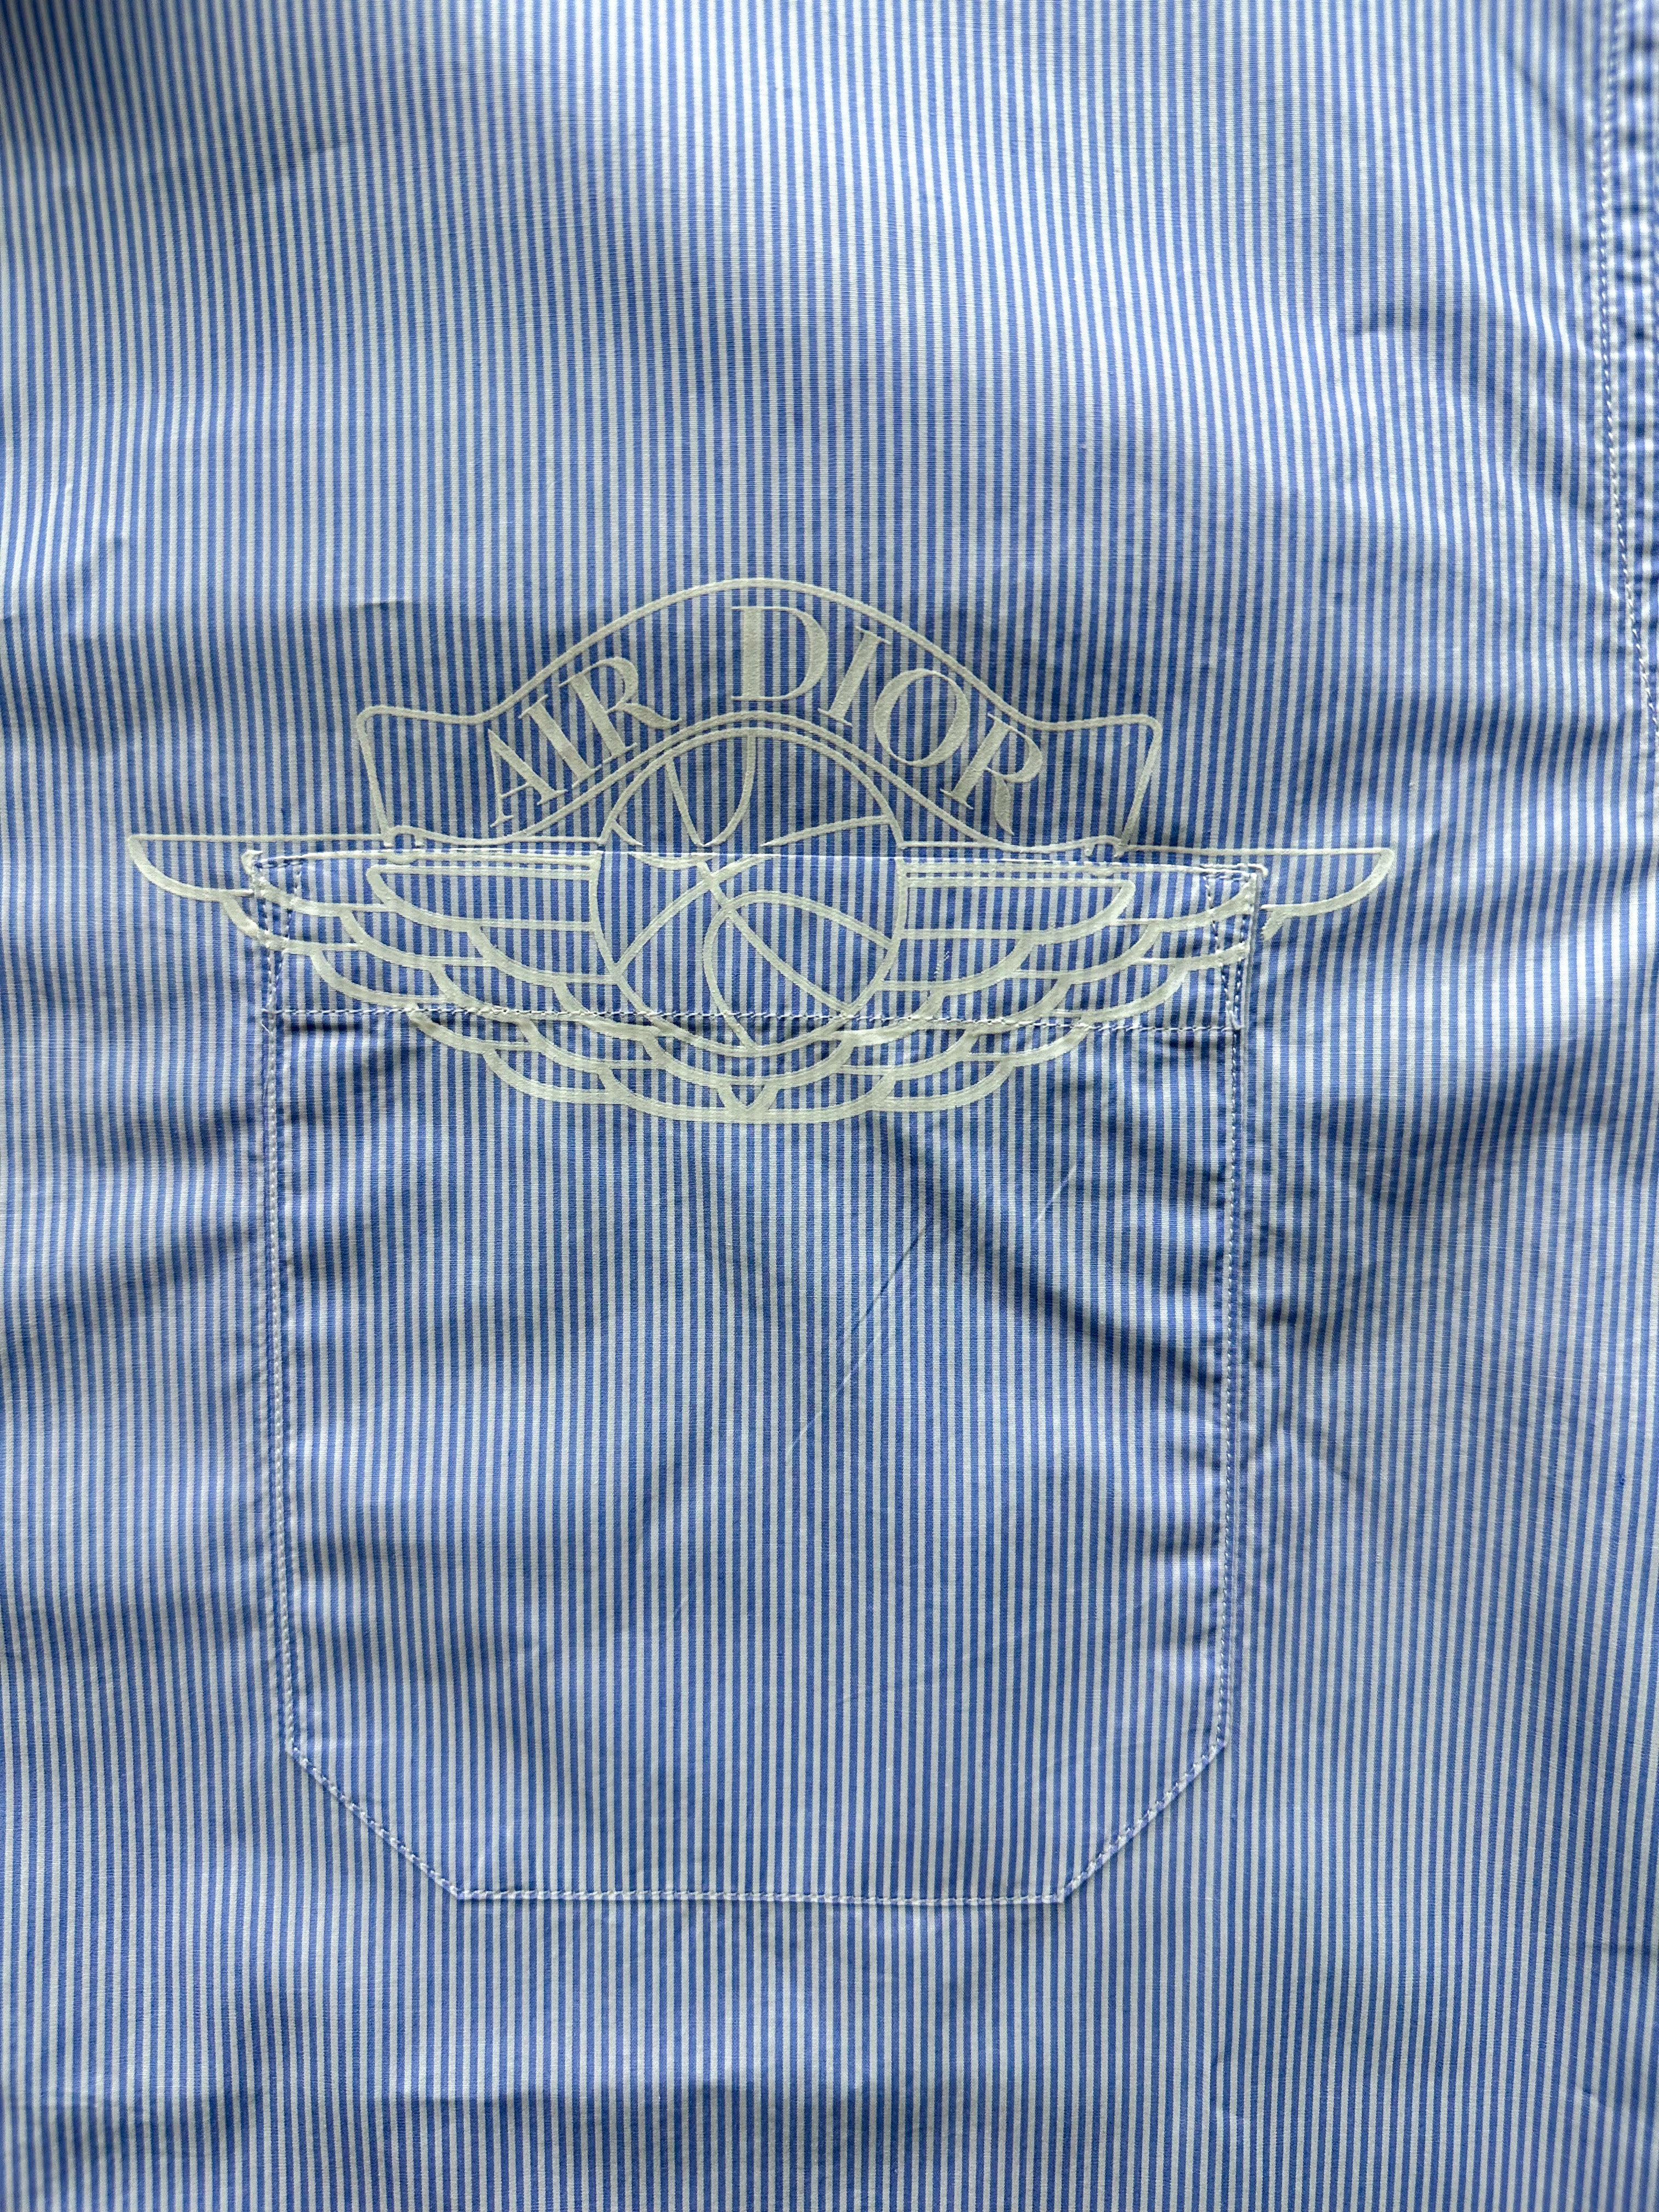 Dior Air Jordan Blue & White Striped Embroidered shirt